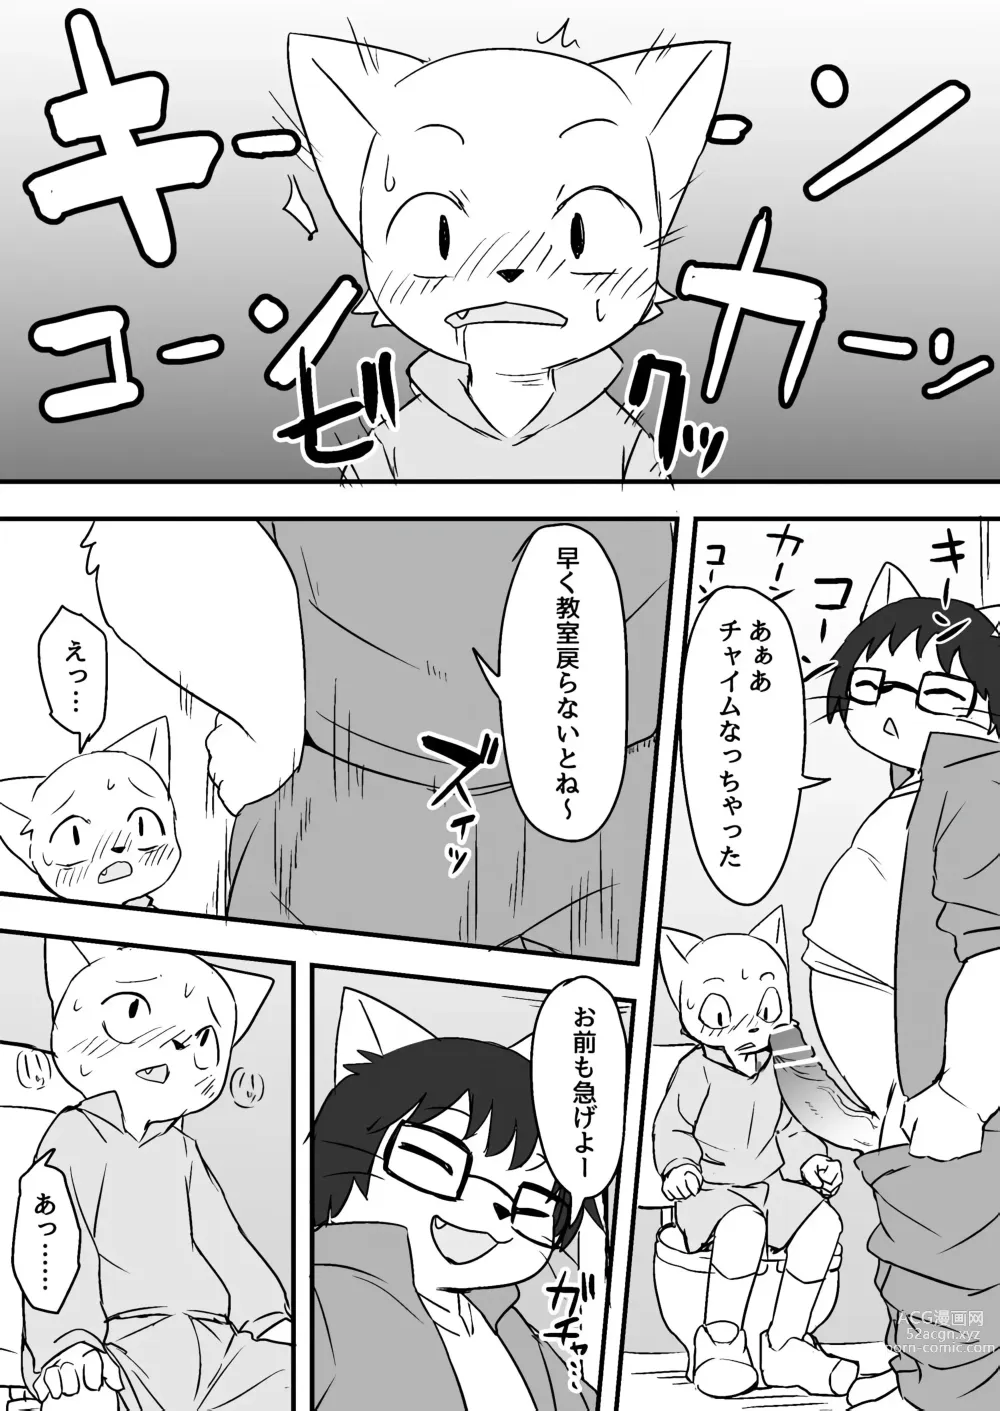 Page 8 of doujinshi Manmosu Marimo - Sensei Story #1